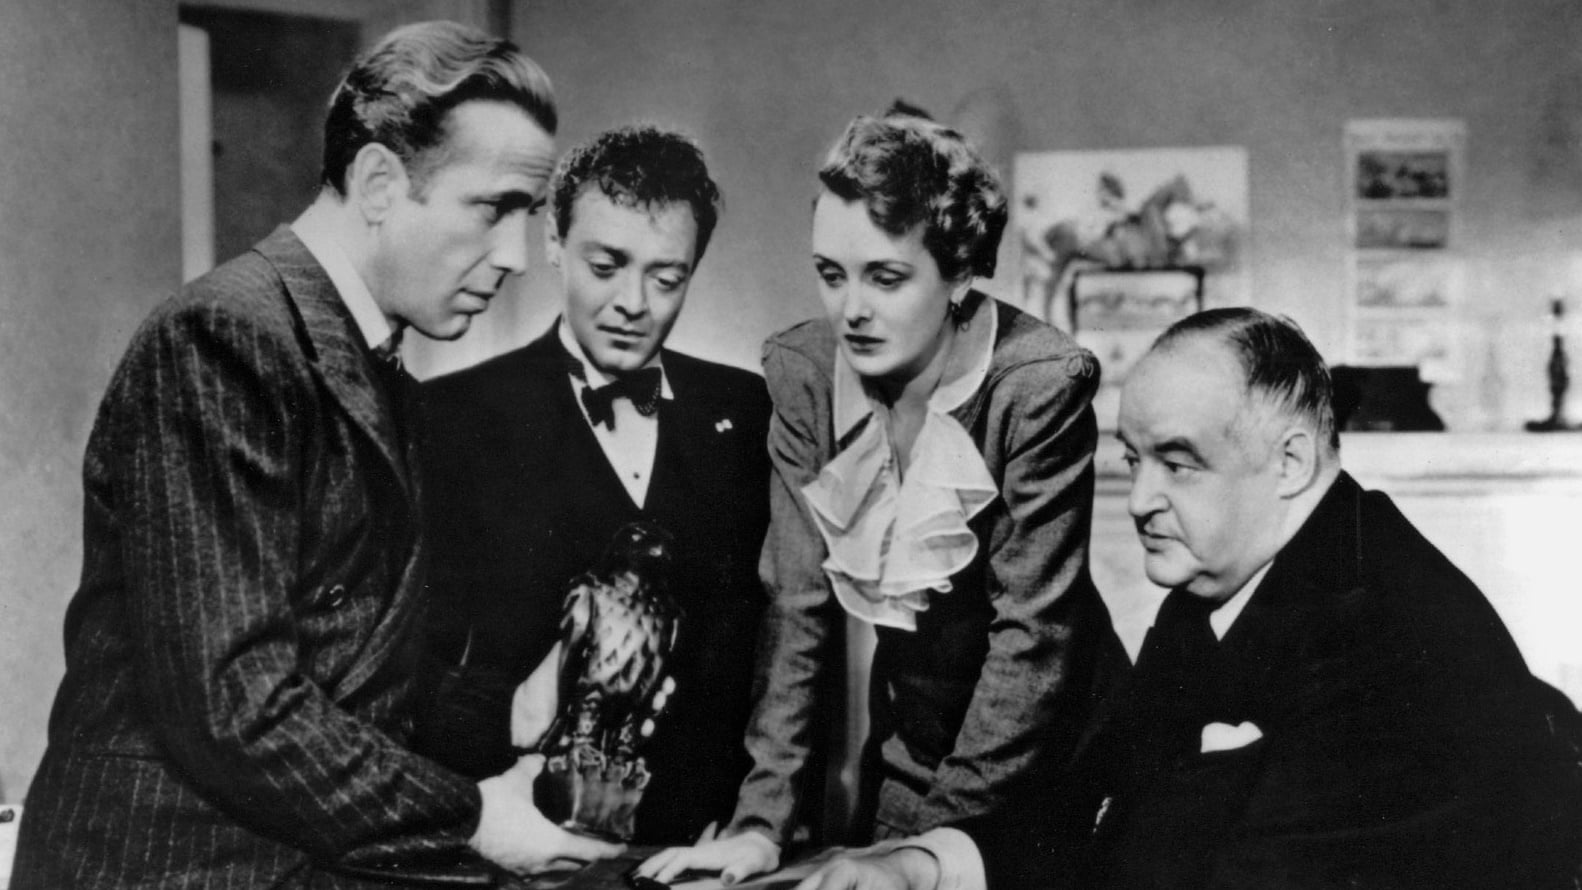 The Maltese Falcon 1941 123movies